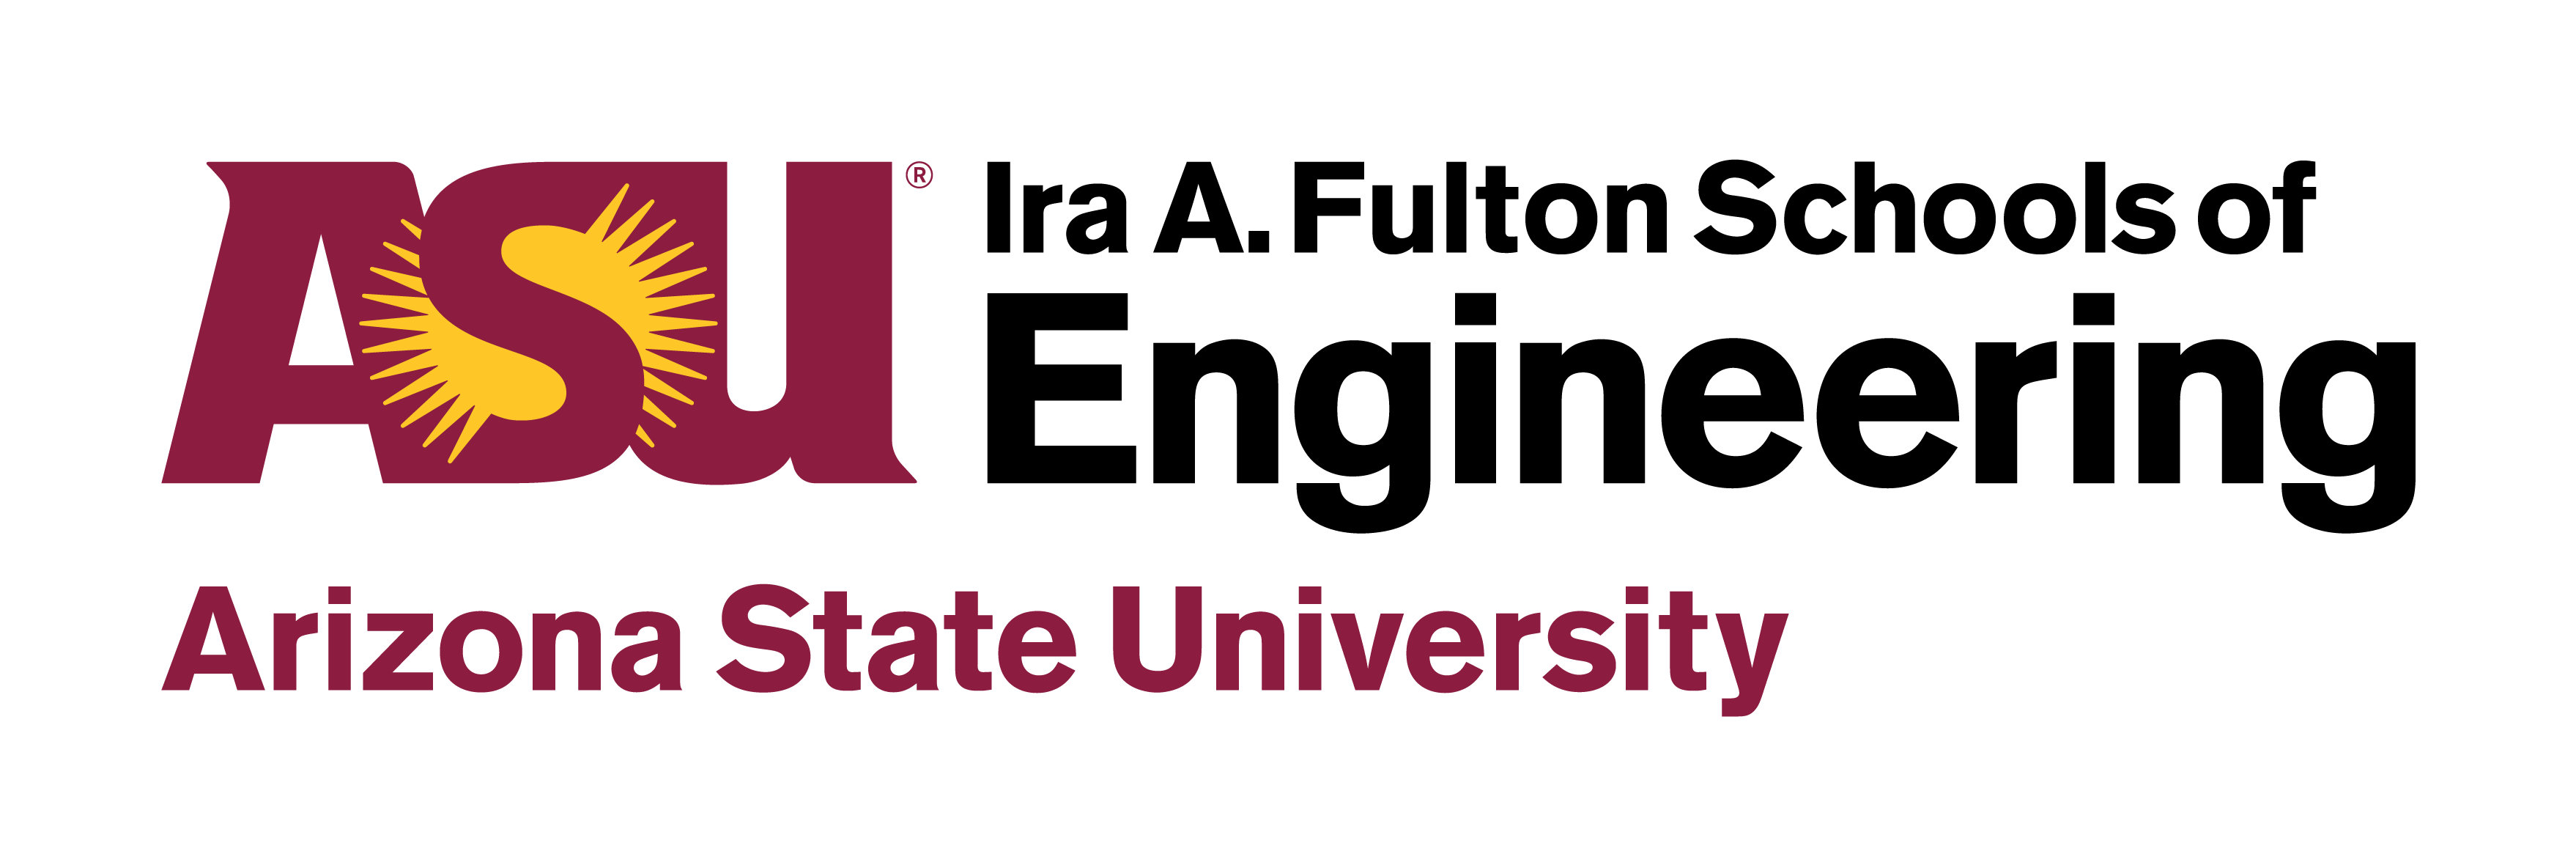 Arizona State University (ASU) Logo PNG Image File